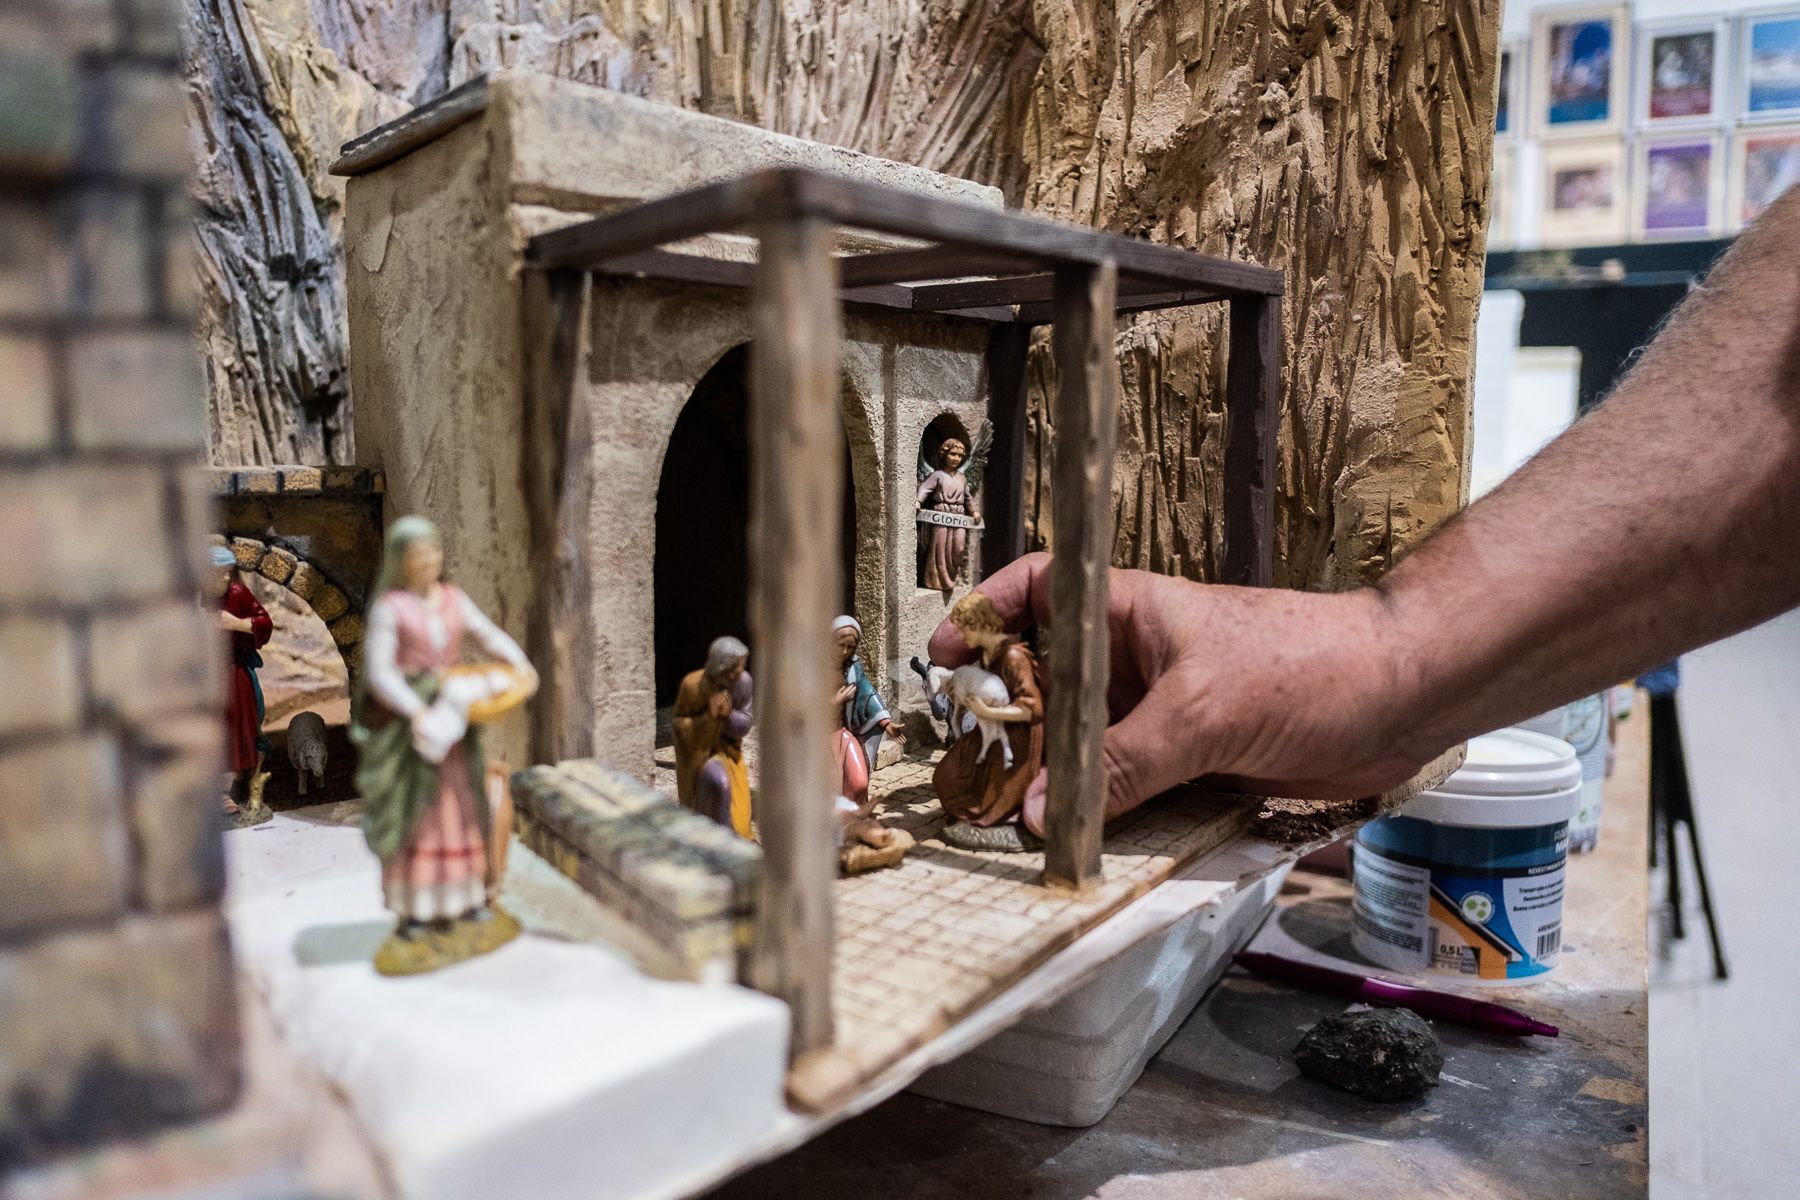 Un belenista rematando el trabajo de creación de un diorama navideño.